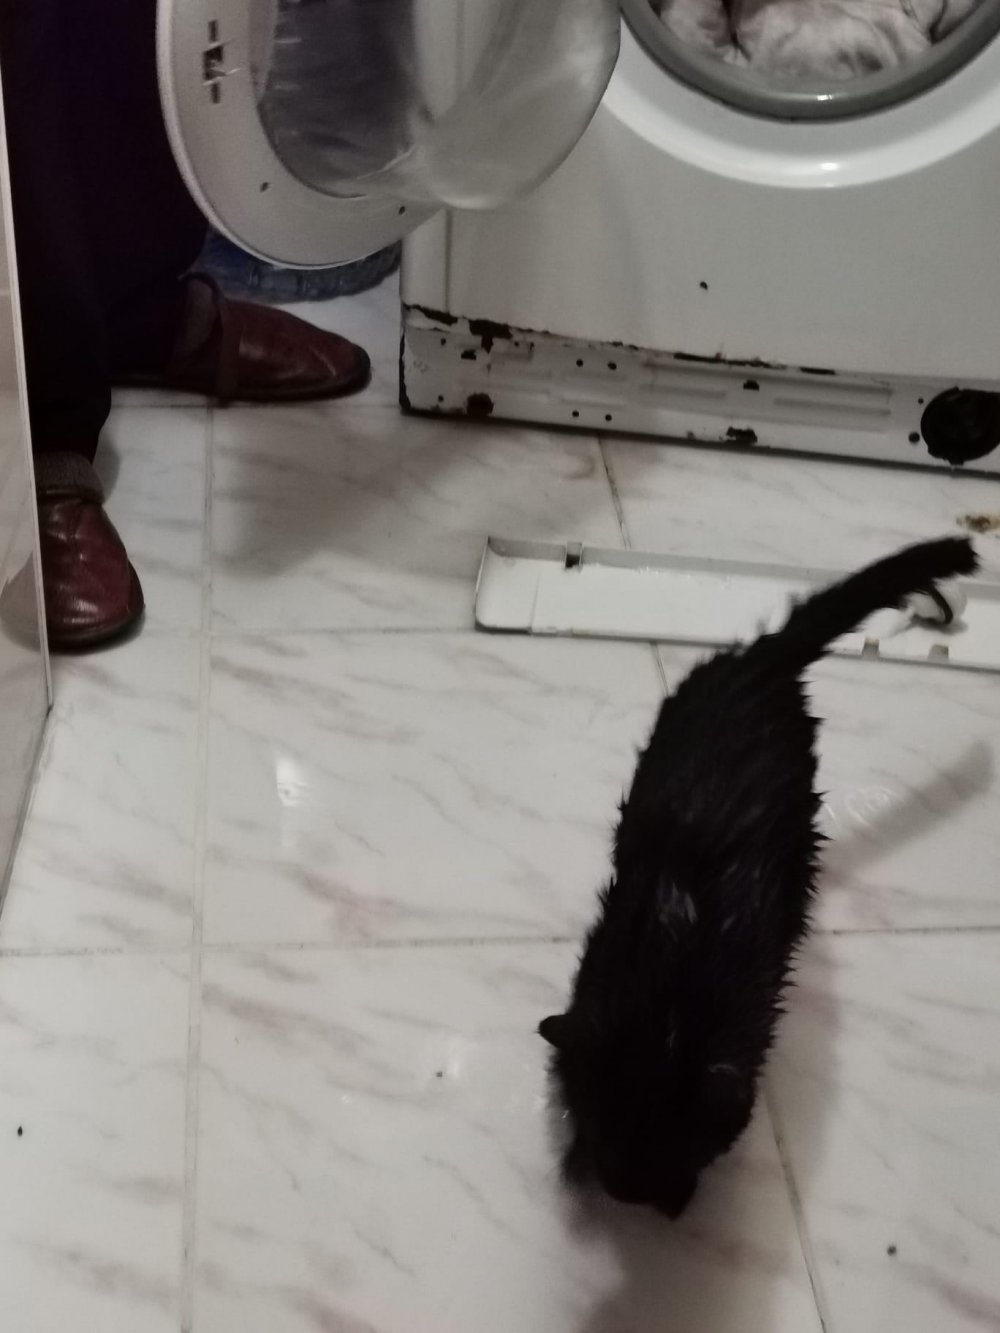 Artvin'de yorganın içinde giren kediyi farketmeden çamaşır makinesine attı